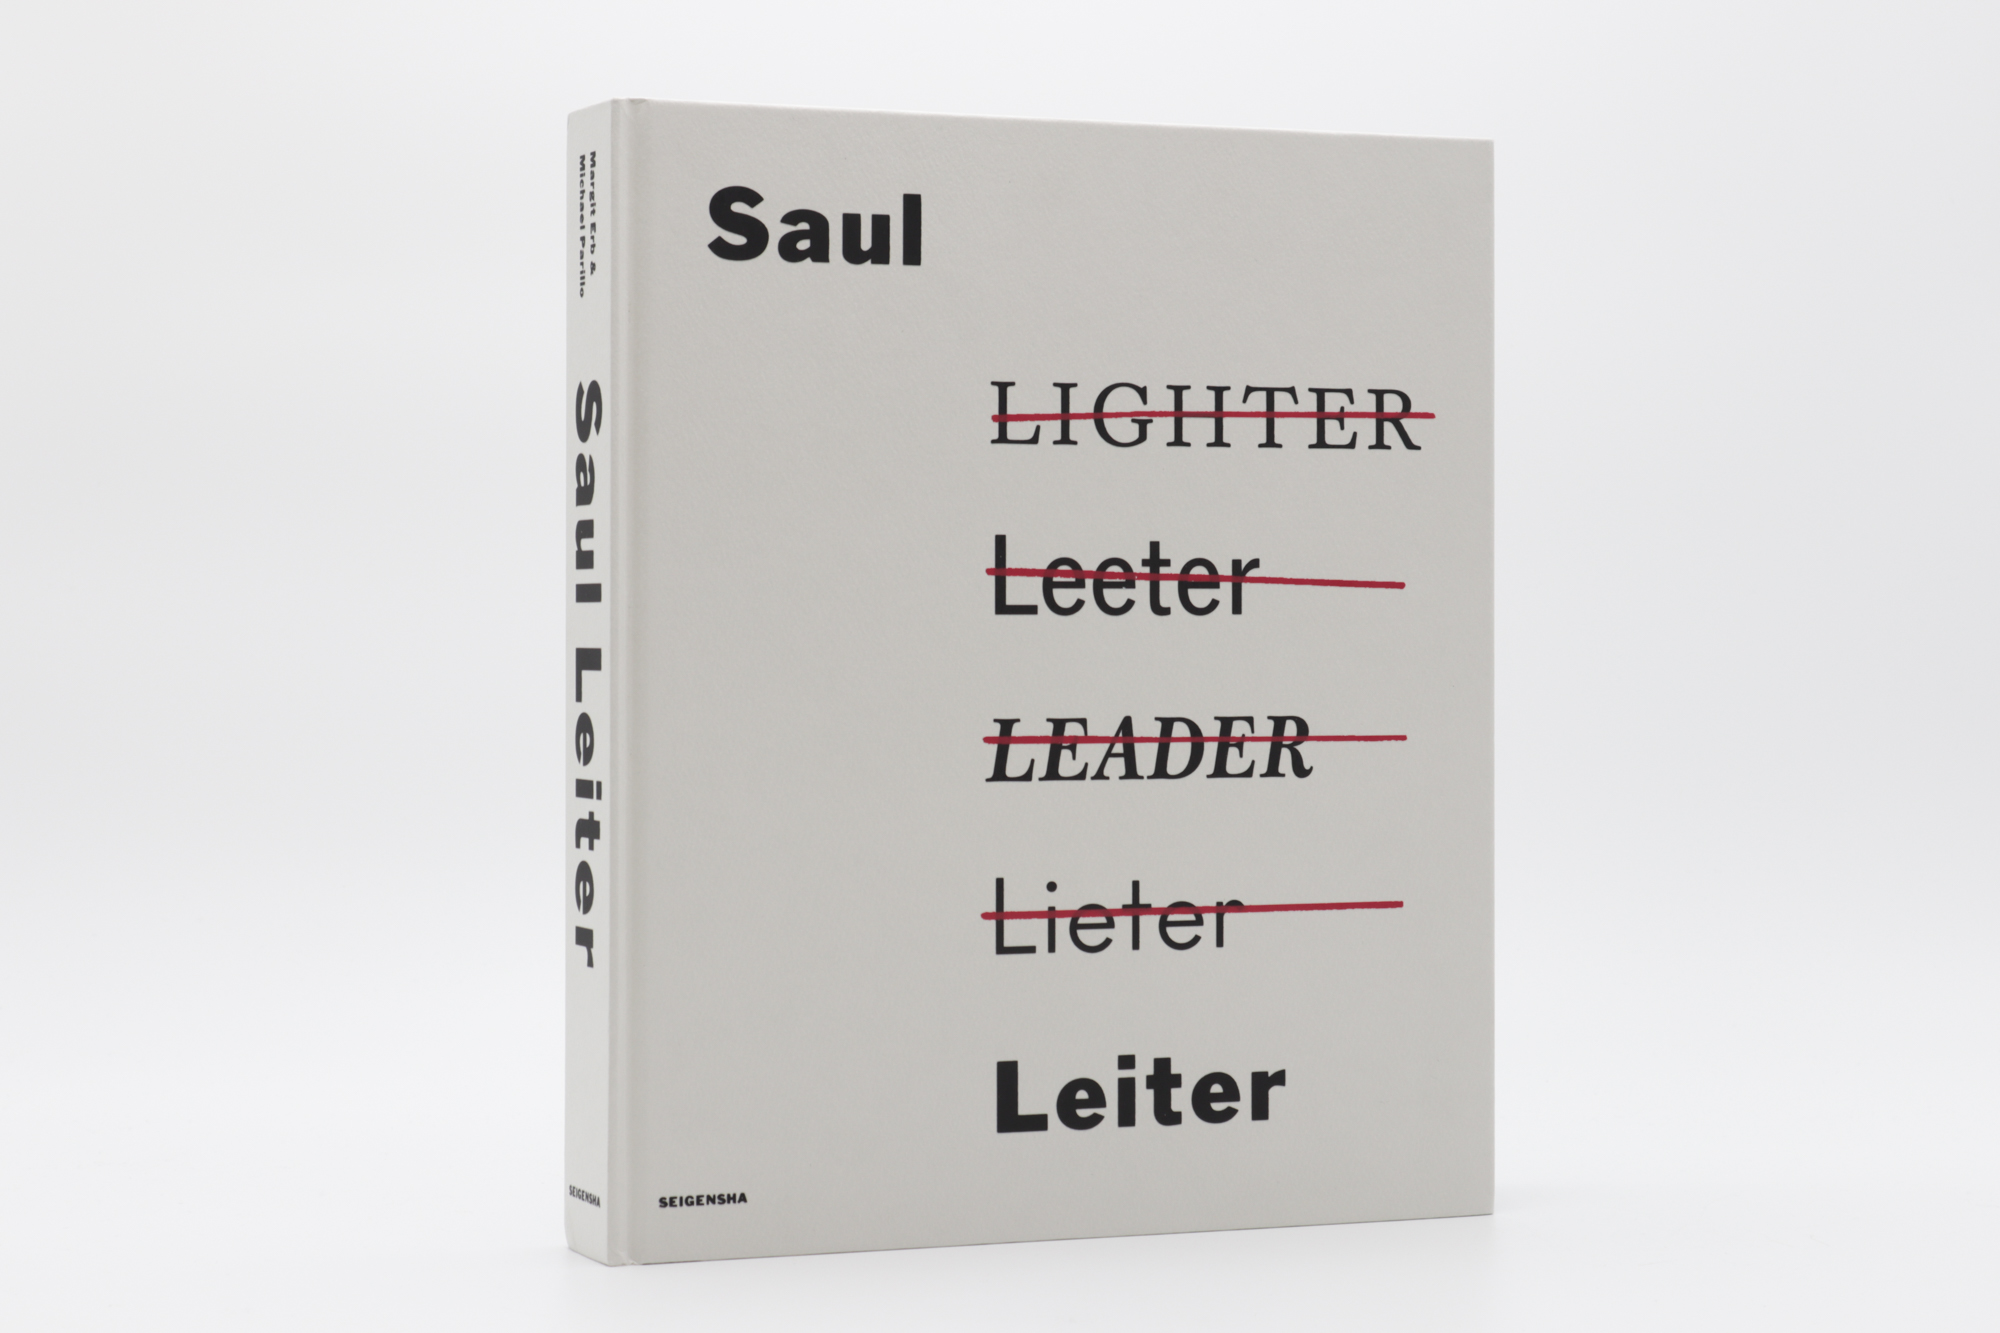 ソール・ライター Saul Leiter The Centennial Retrospective｜青幻舎 